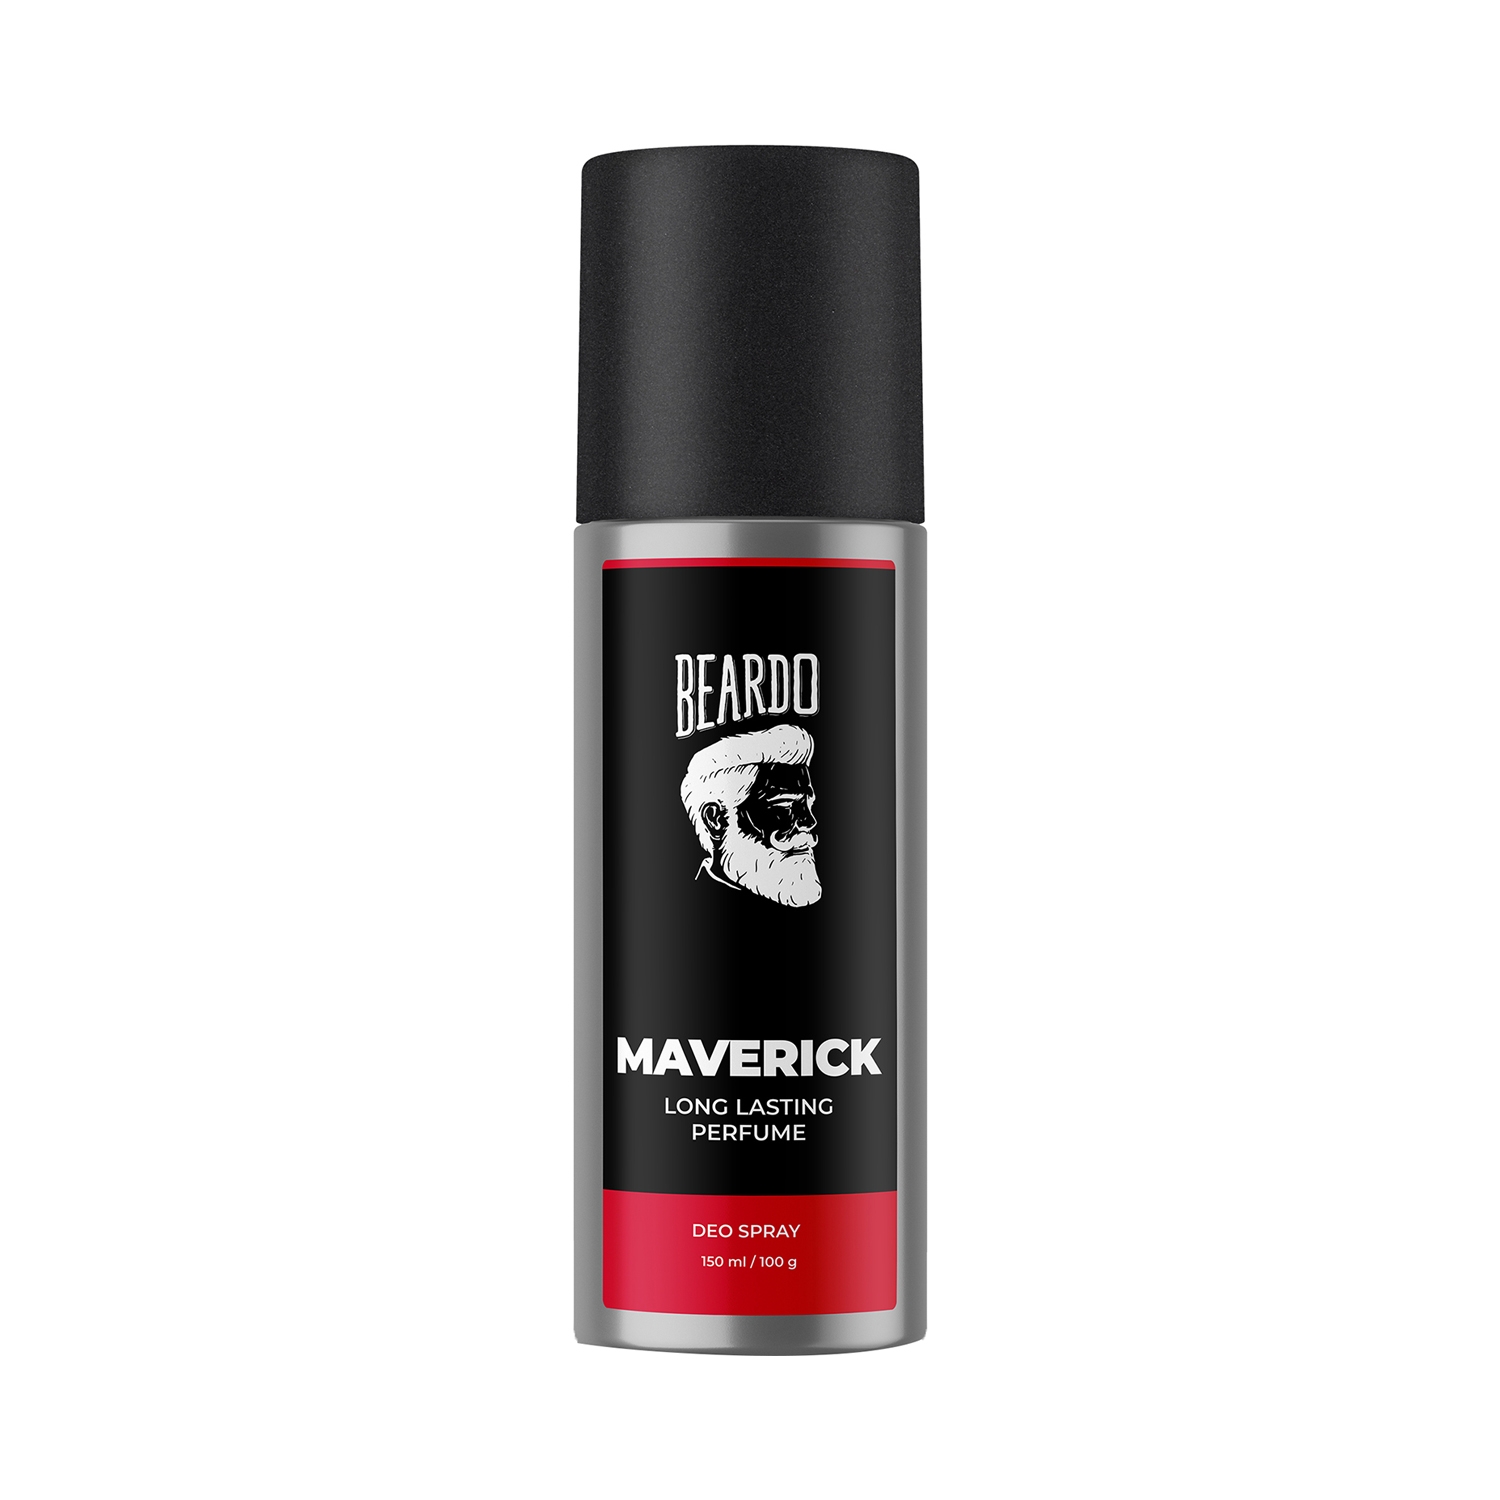 Beardo Maverick Perfume Deodorant Spray (150ml)